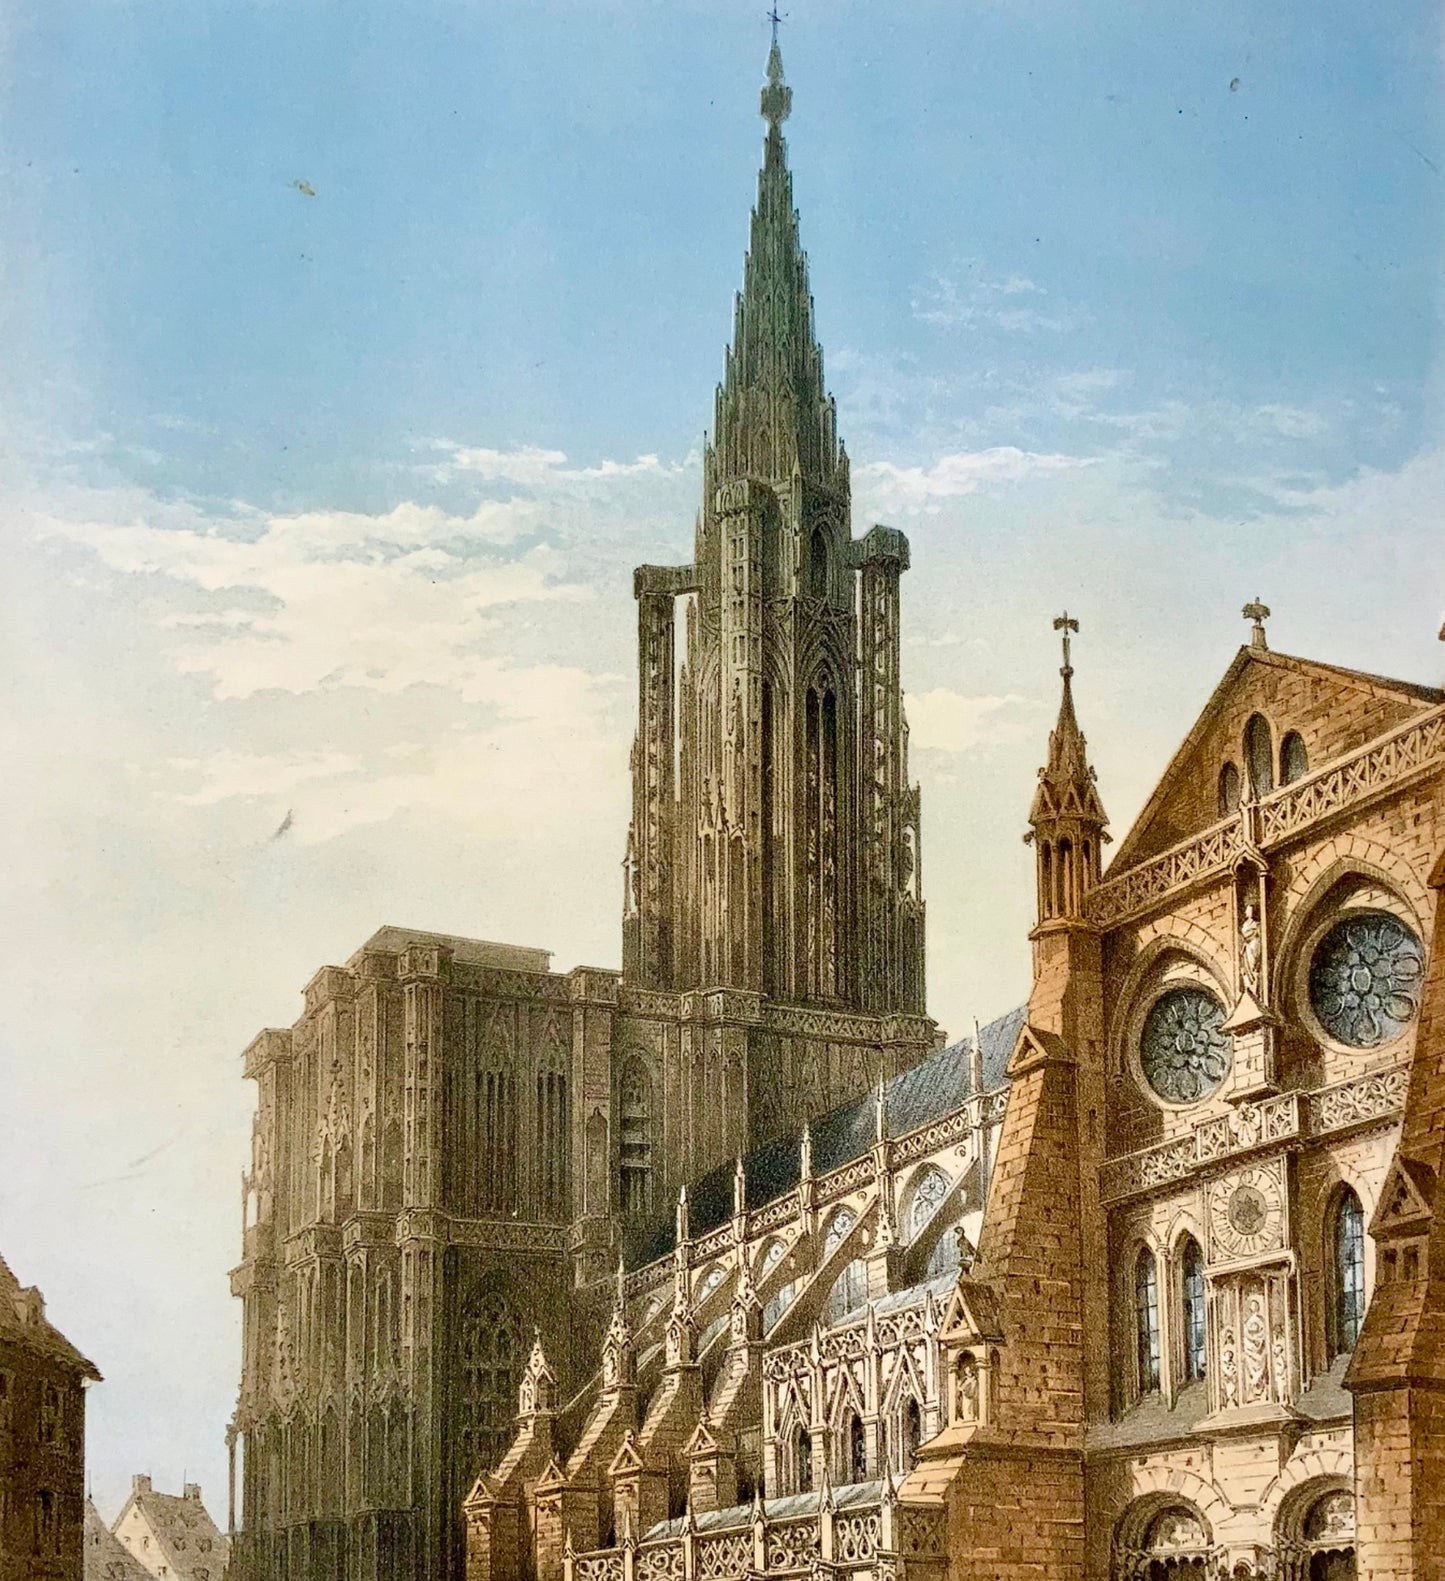 1872 Marche de Strasbourg, Pridham, grande lithographie couleur in-folio, musique, topographie étrangère